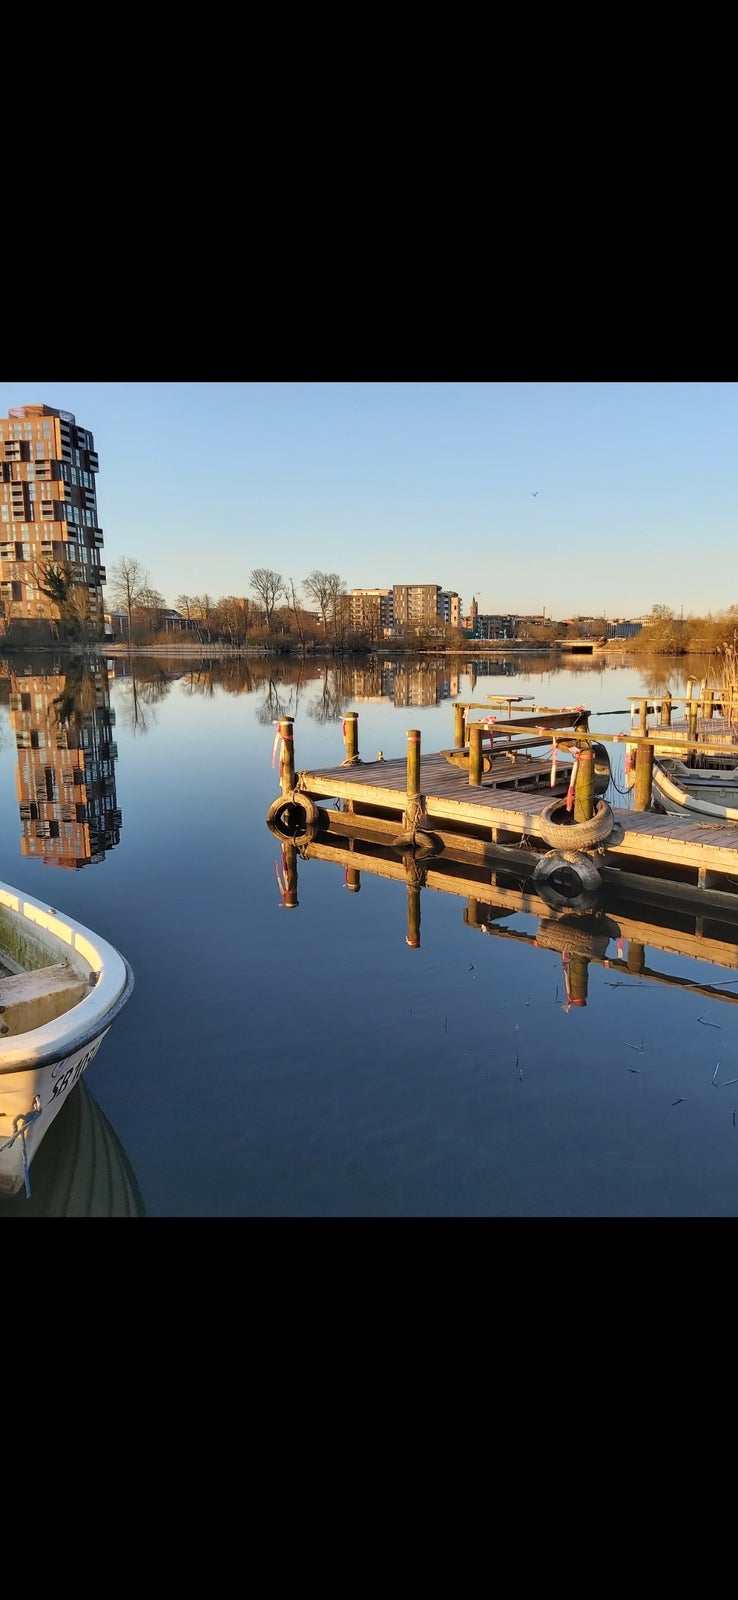 bådplads til leje på græs Silkeborg Langsø til...